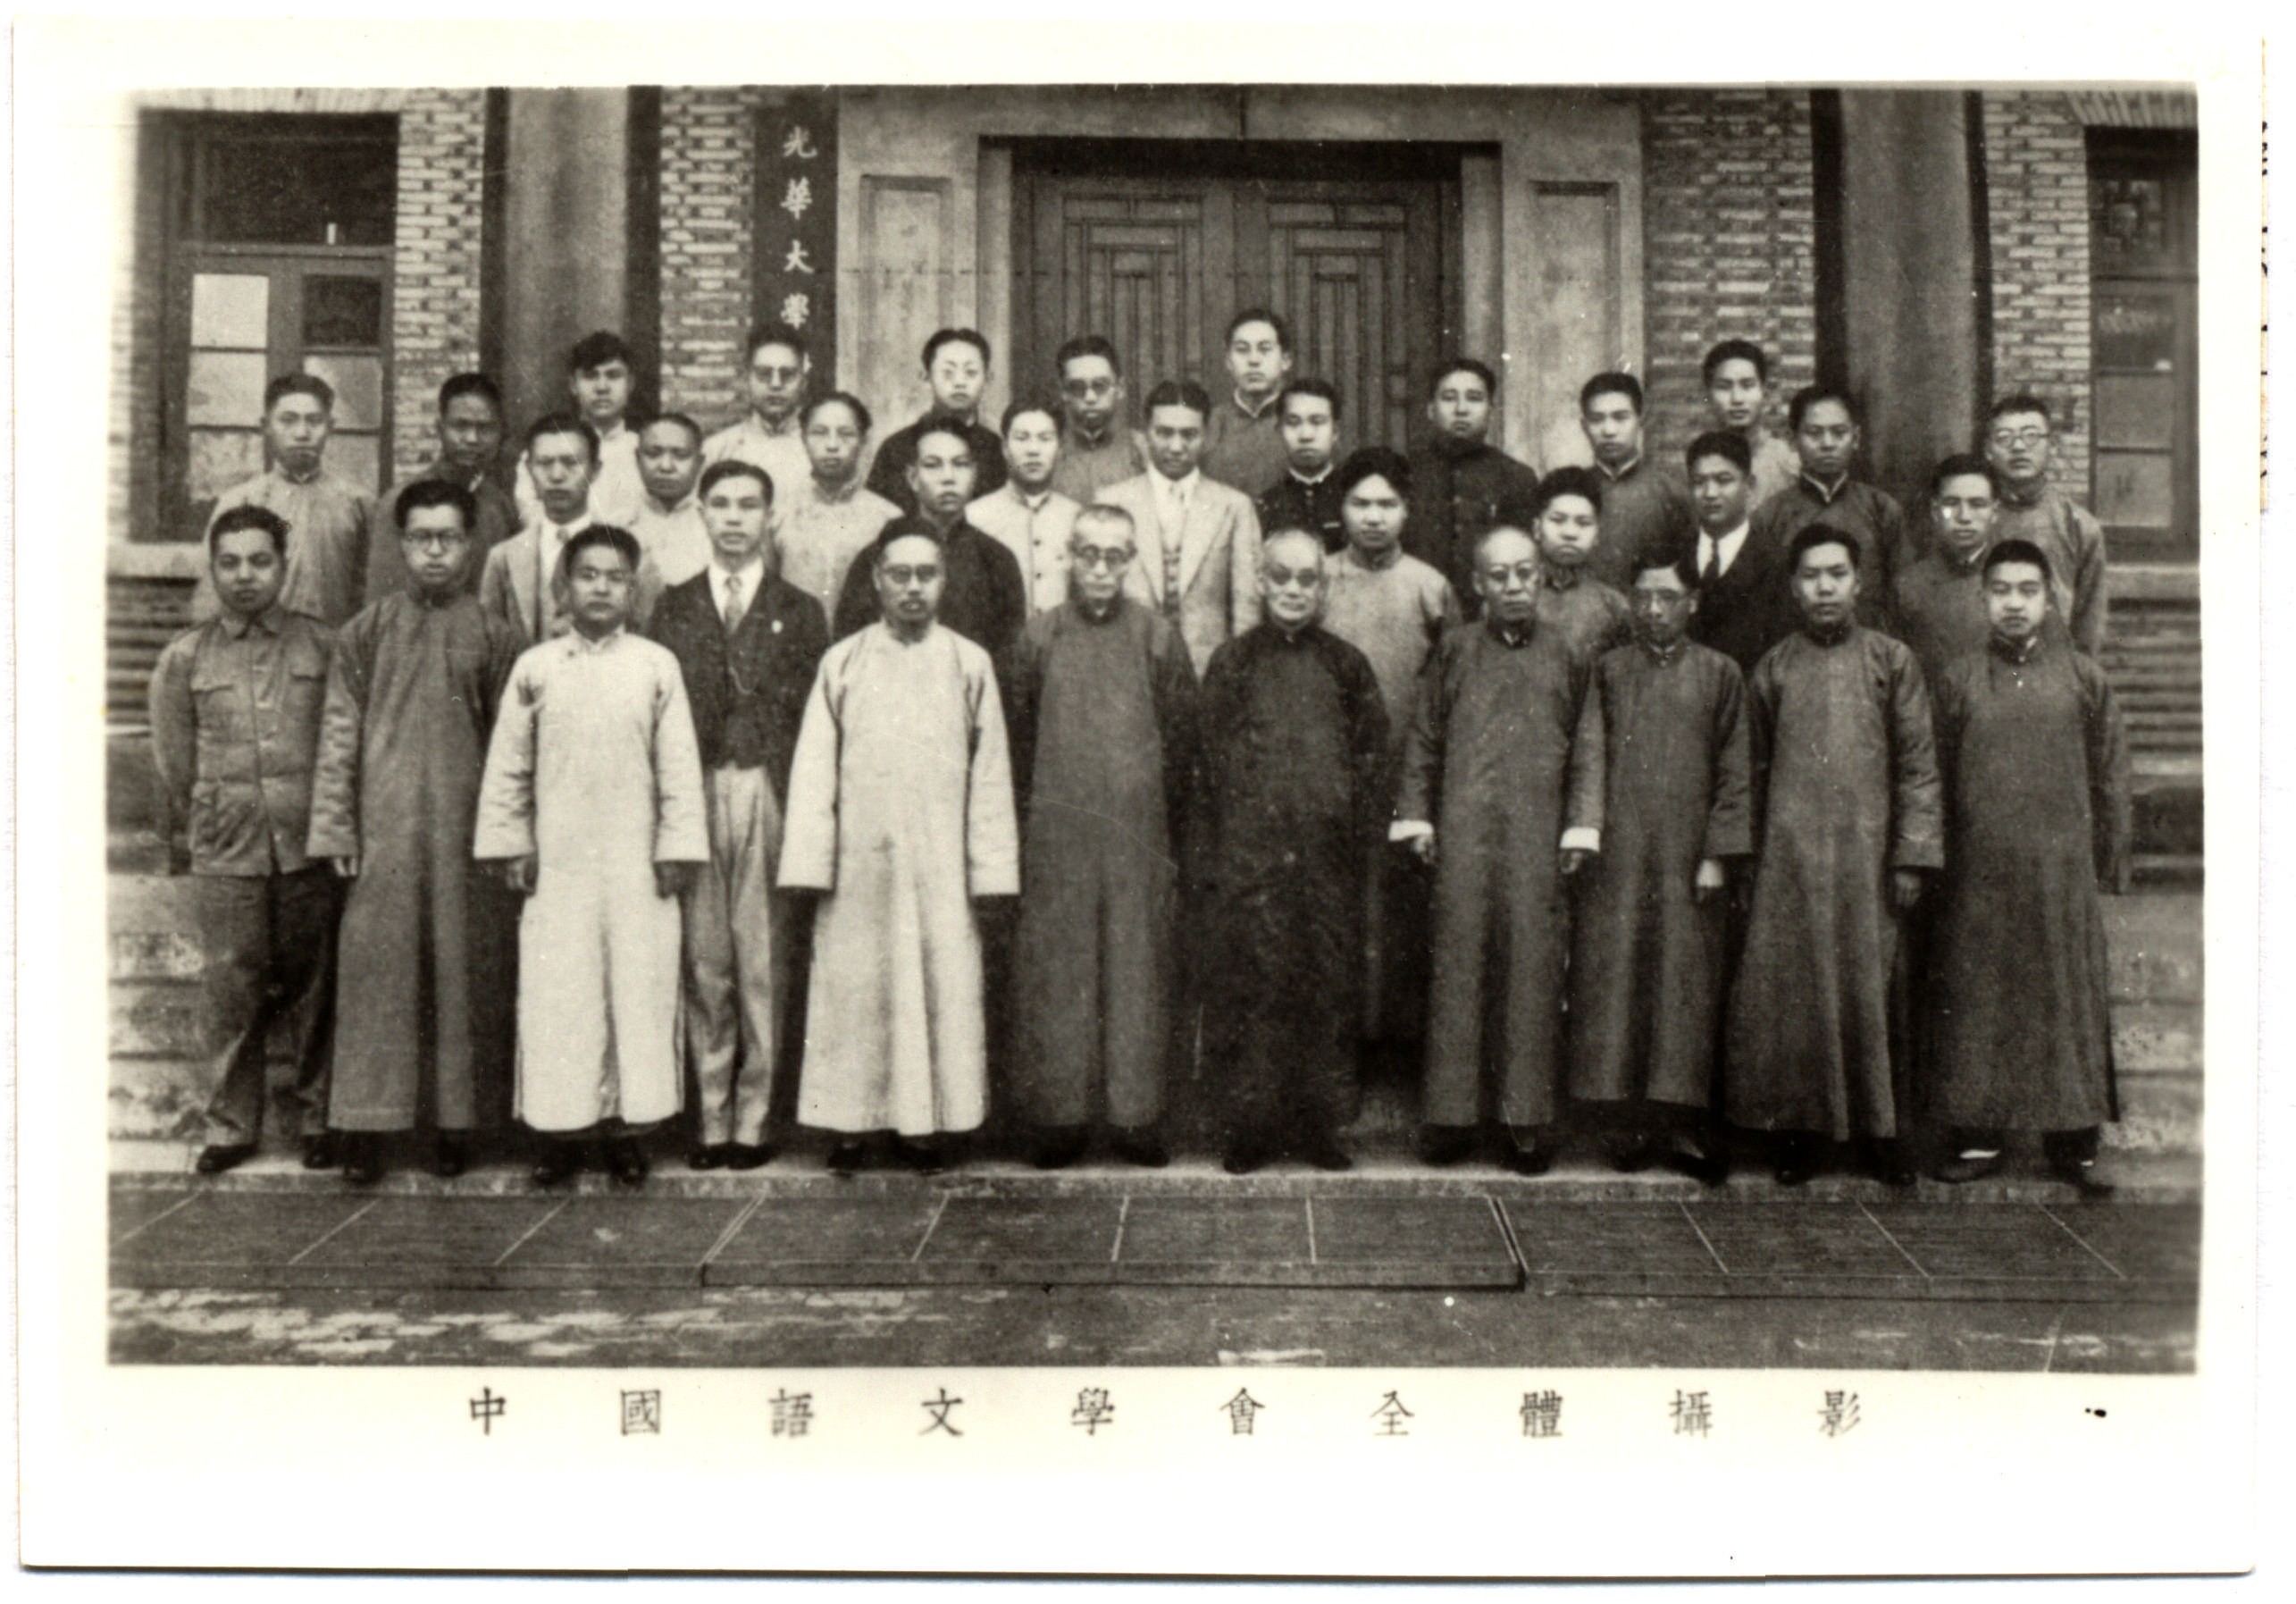 1935年，光华大学学术课外学术研究组织中国语文学会全体师生在上海大西路光华大学校内合影。前排右四：吕思勉；右五：张寿镛；右六：蒋维乔；右七：钱基博